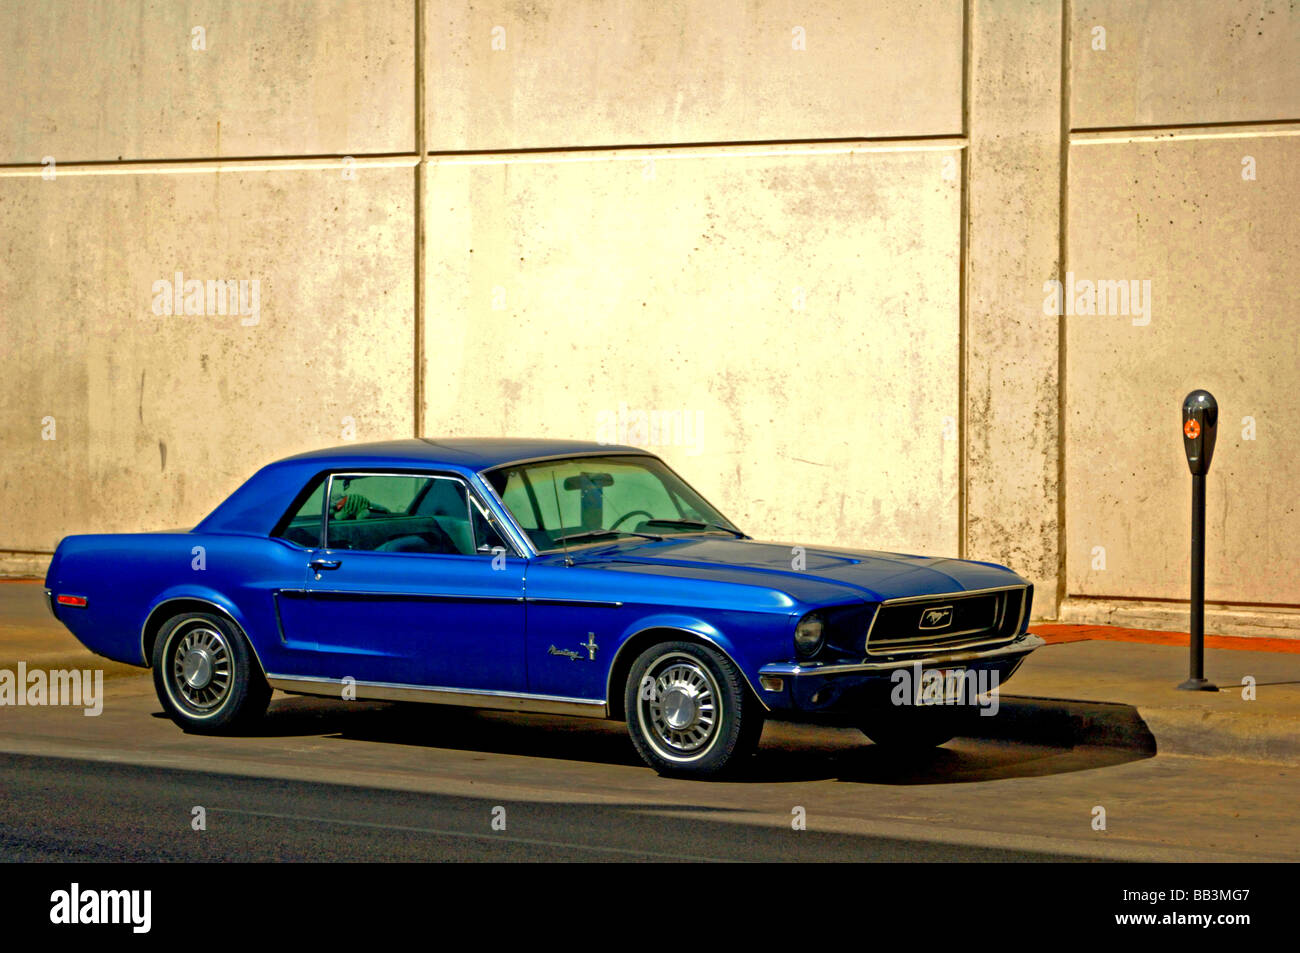 Jahrgang 1966 Ford Mustang sitzt an einer Parkuhr auf einer städtischen Straße, die Muscle-Car von anno dazumal ist bis zur Perfektion restauriert Stockfoto